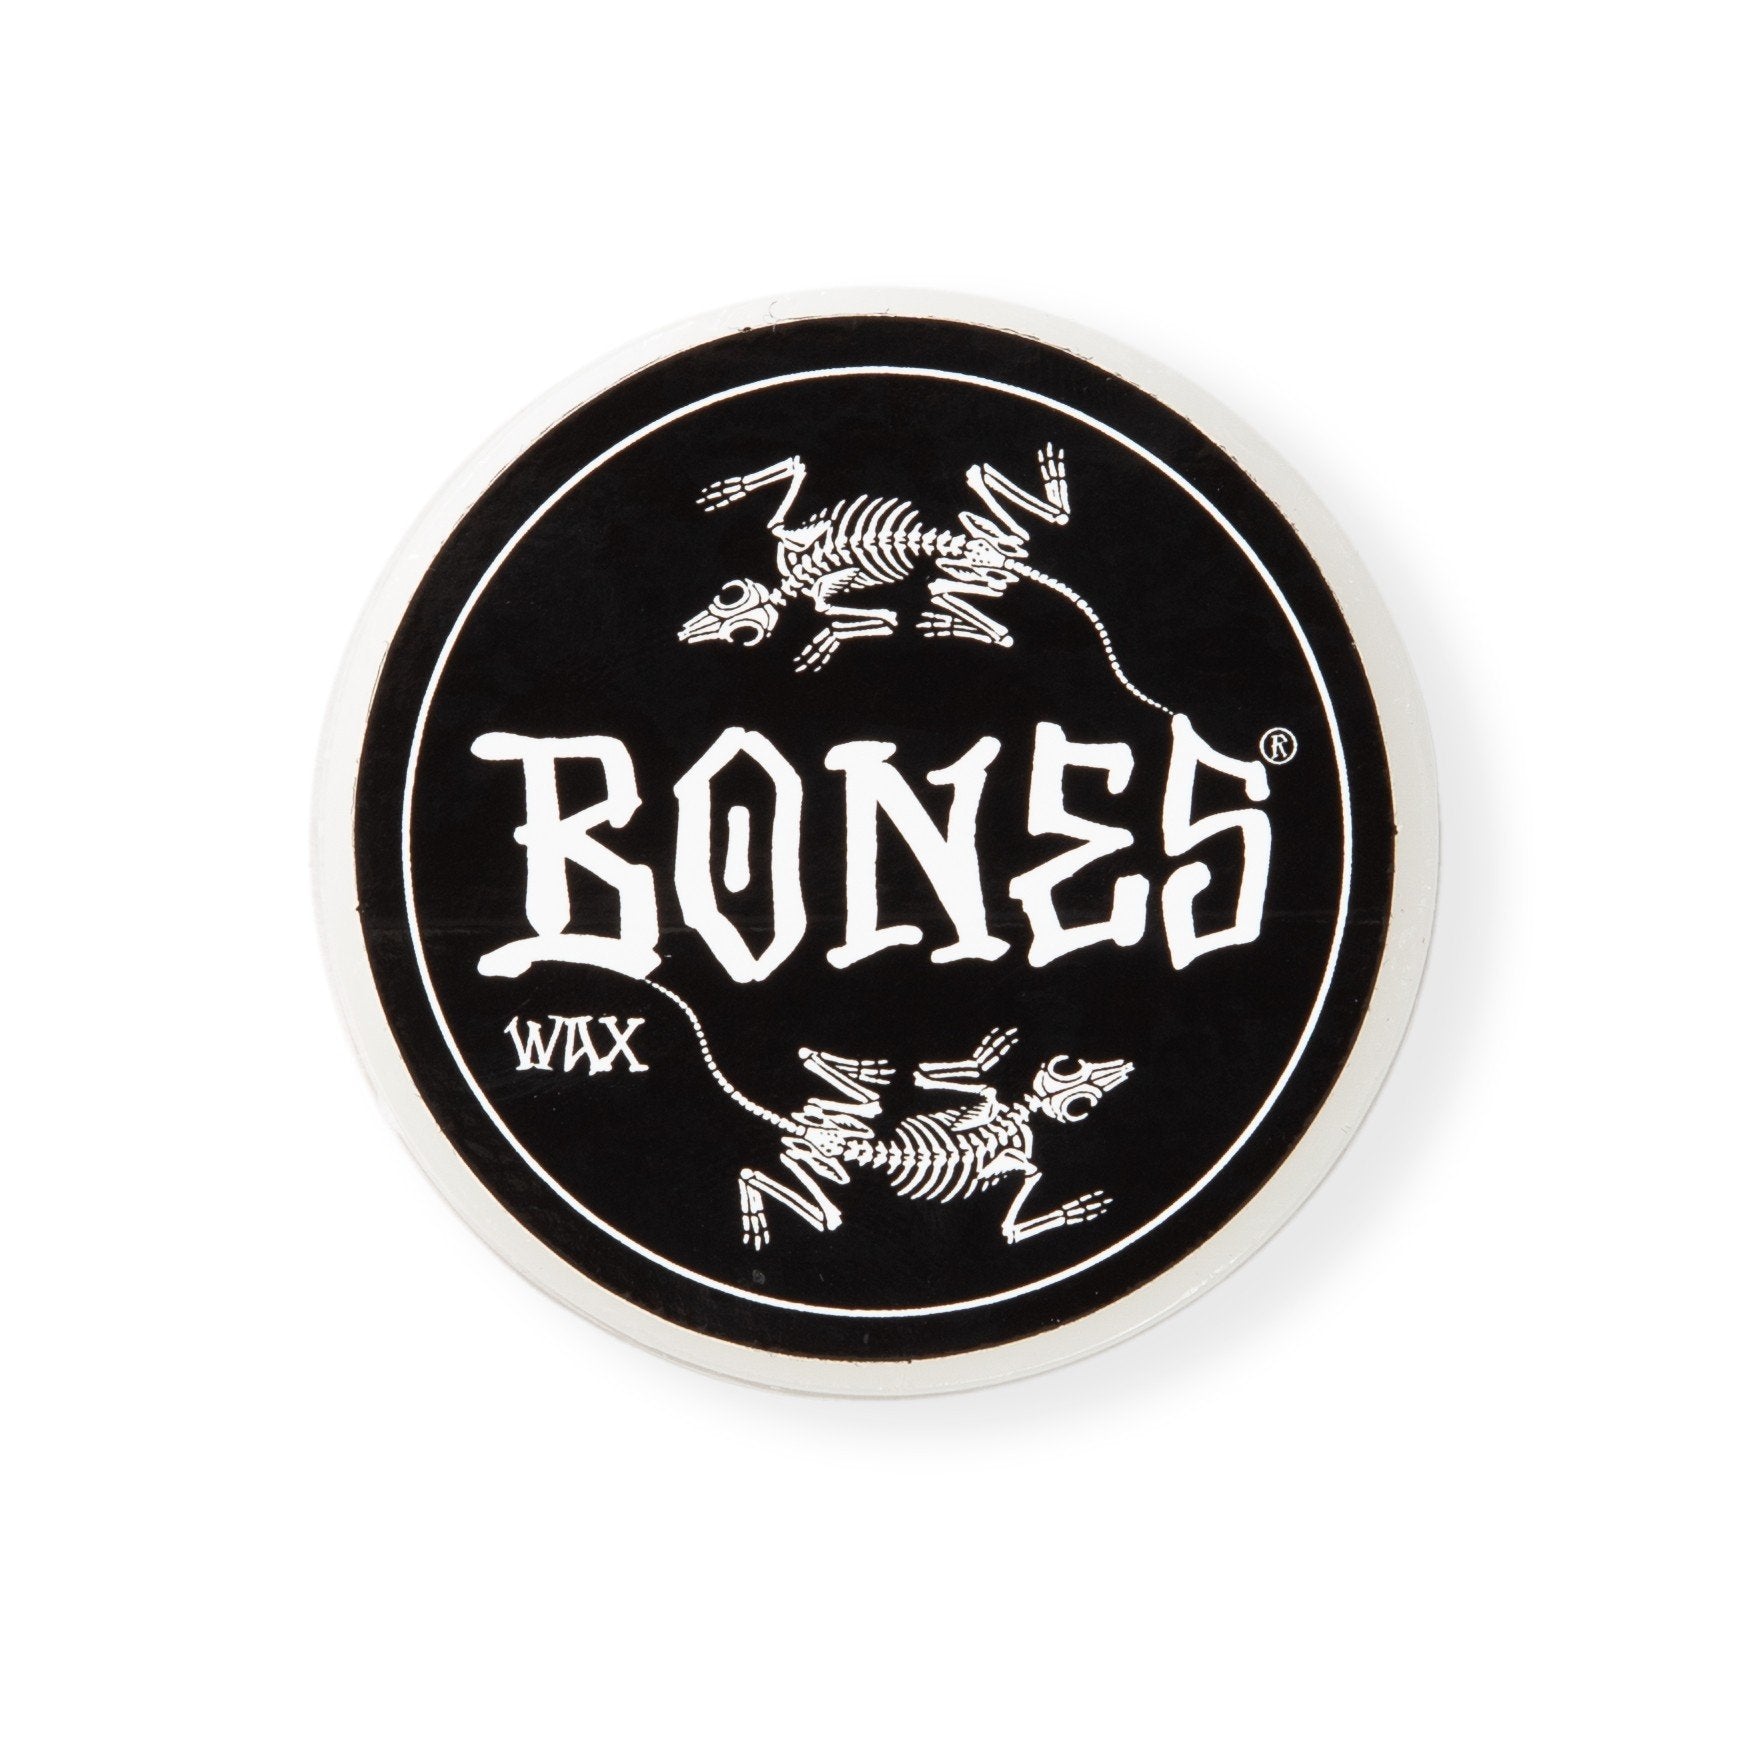 Bones Wax Vato Rat Wax Skateboard Wax 60 GM - 845584085834